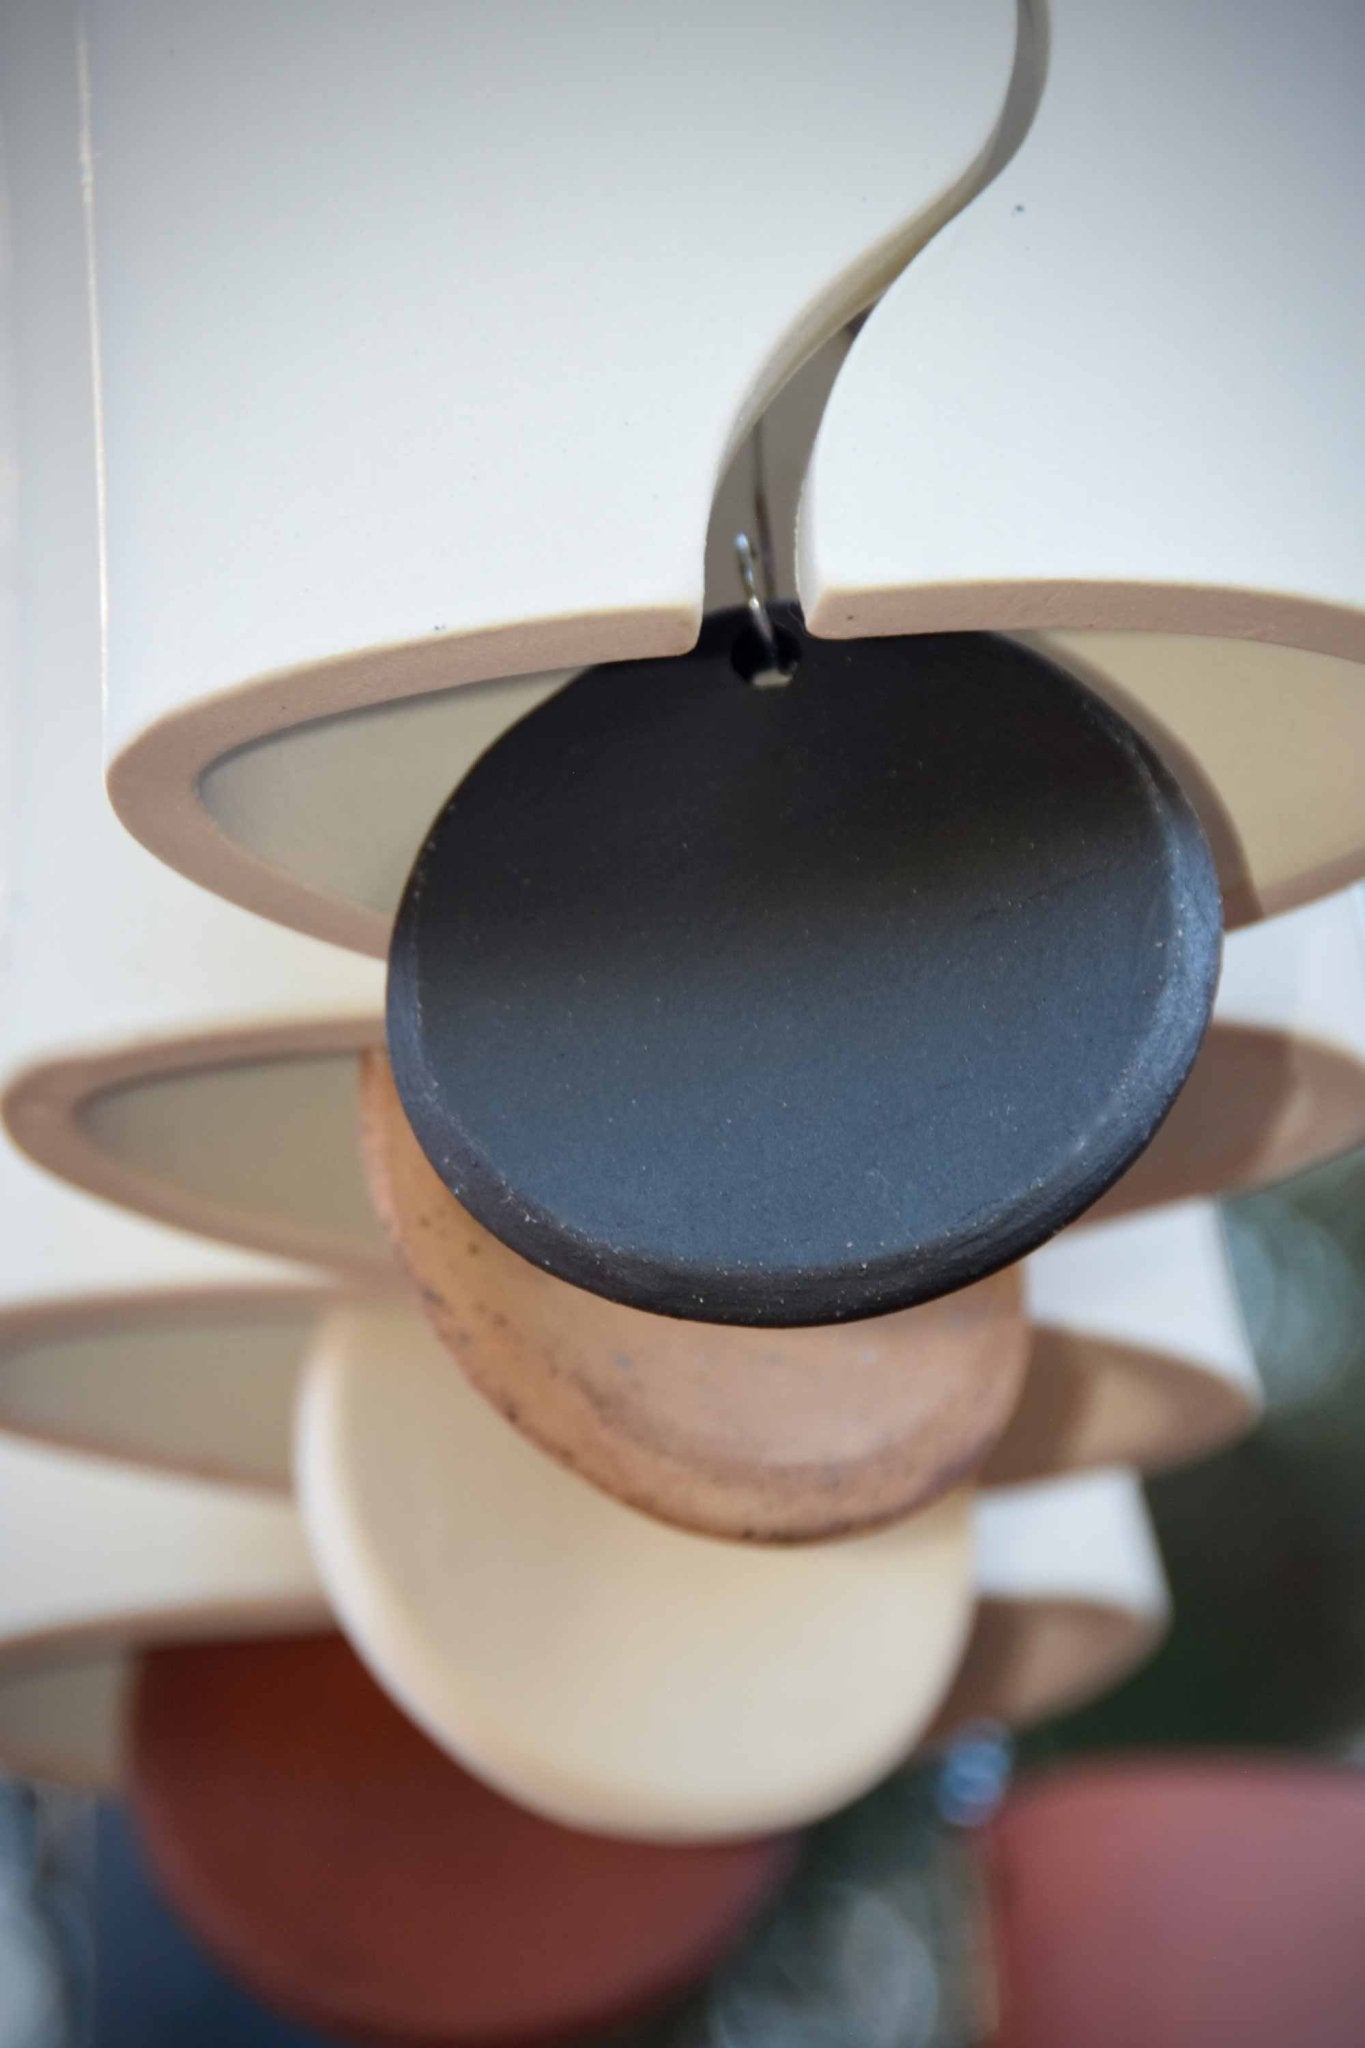 Modern Wind Bell A Unique Handmade Gift - EarthWind Bells